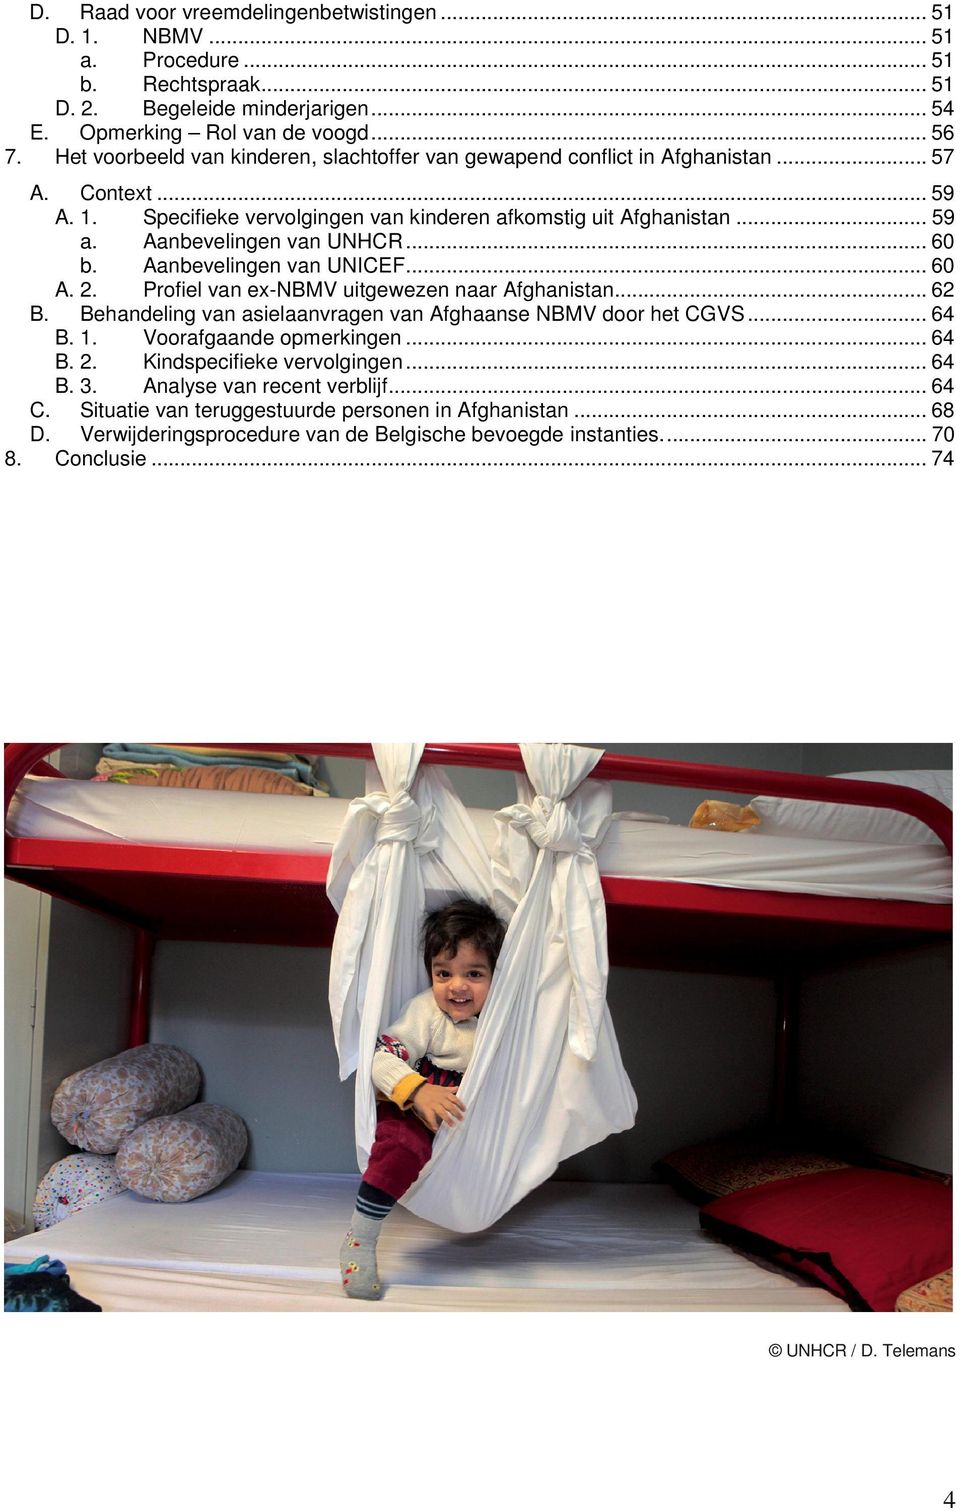 Aanbevelingen van UNHCR... 60 b. Aanbevelingen van UNICEF... 60 A. 2. Profiel van ex-nbmv uitgewezen naar Afghanistan... 62 B. Behandeling van asielaanvragen van Afghaanse NBMV door het CGVS... 64 B.